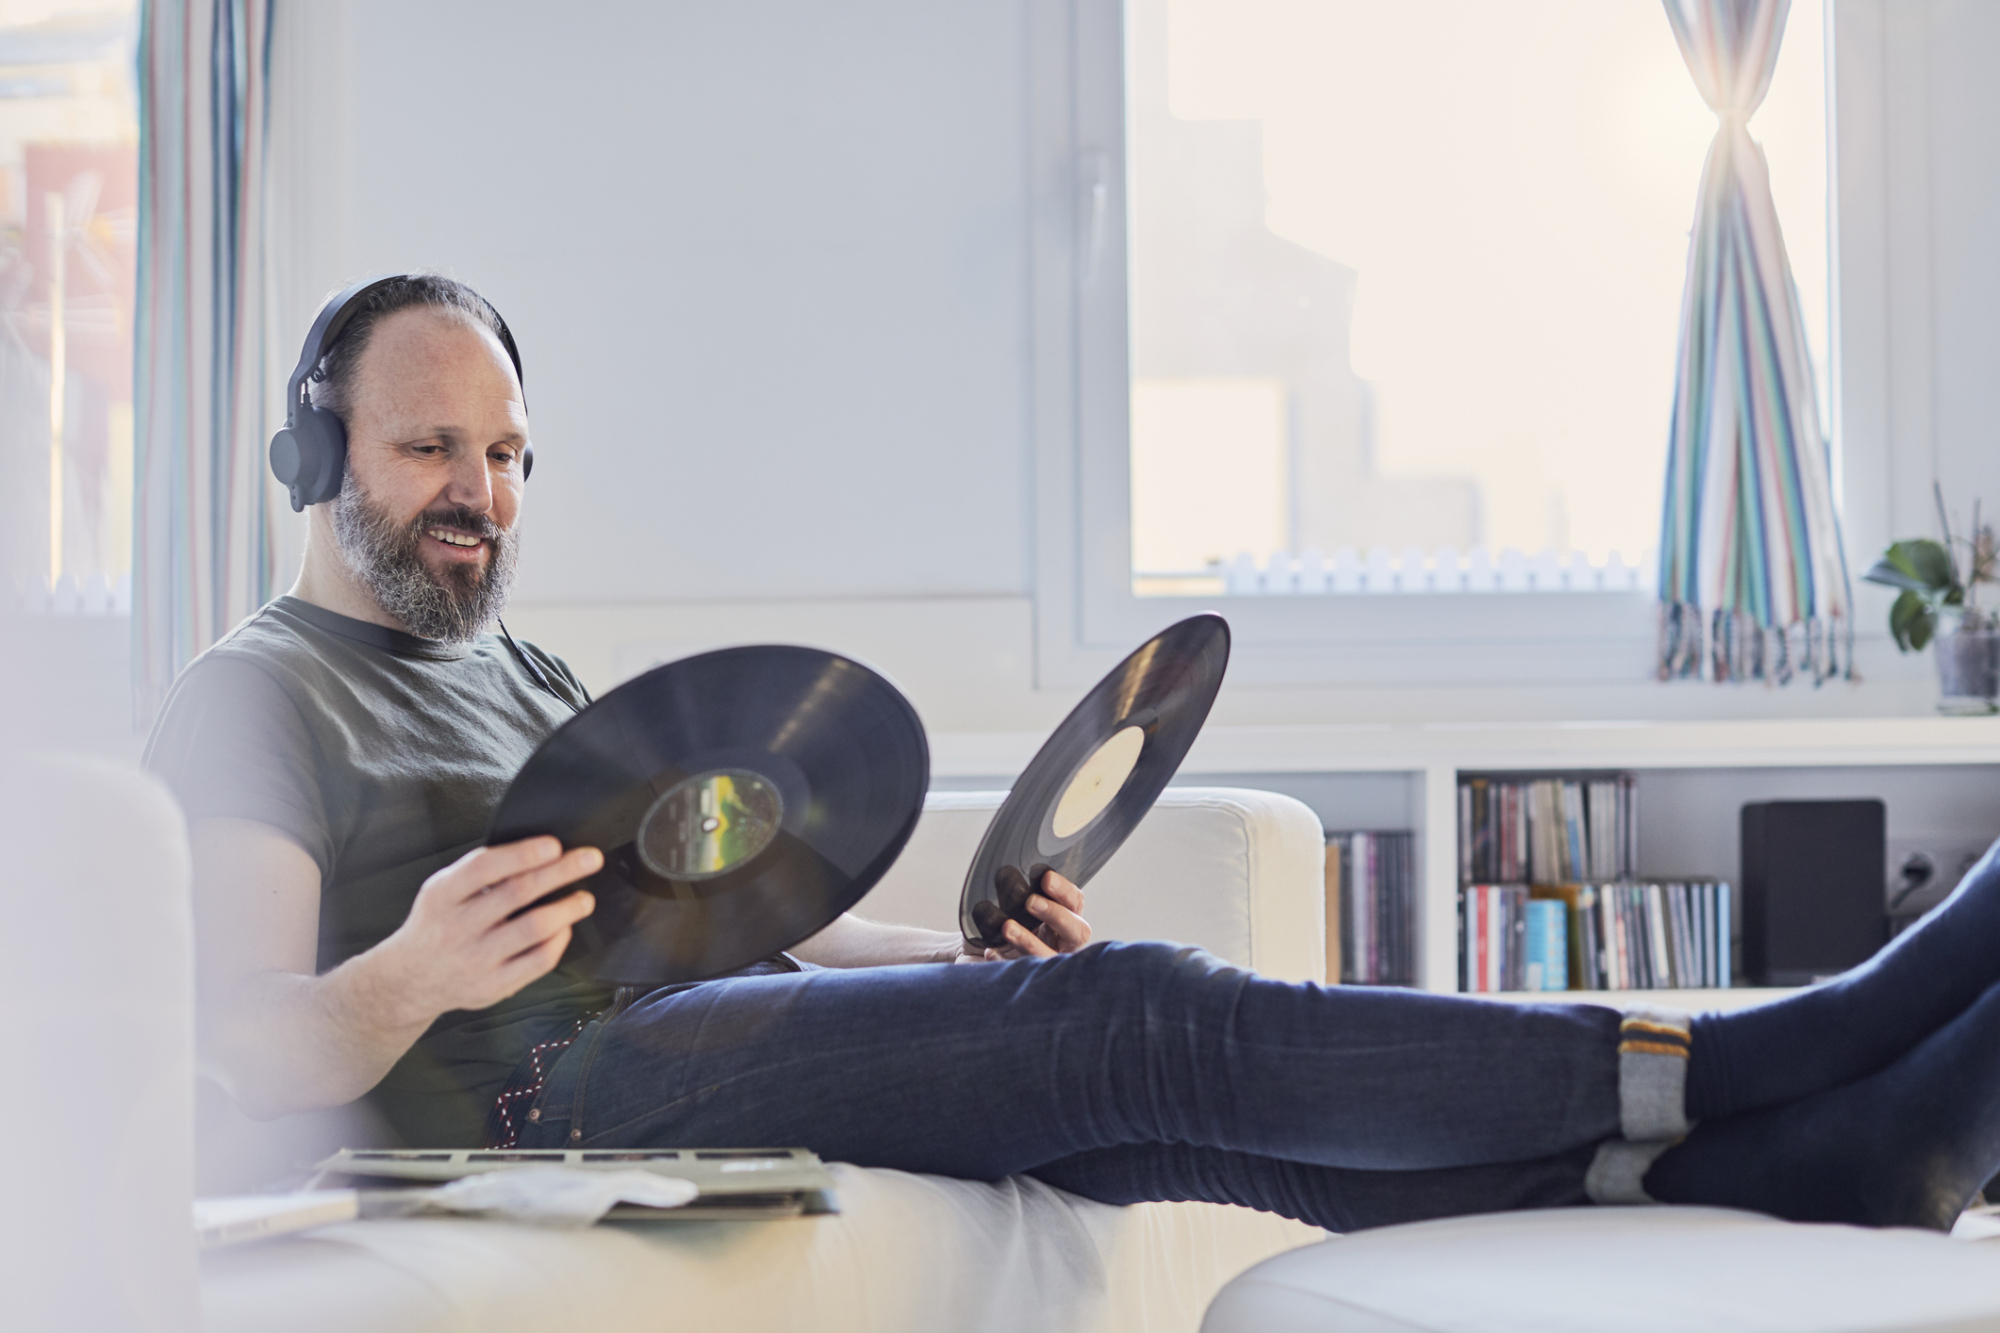 Man enjoying his vinyl records